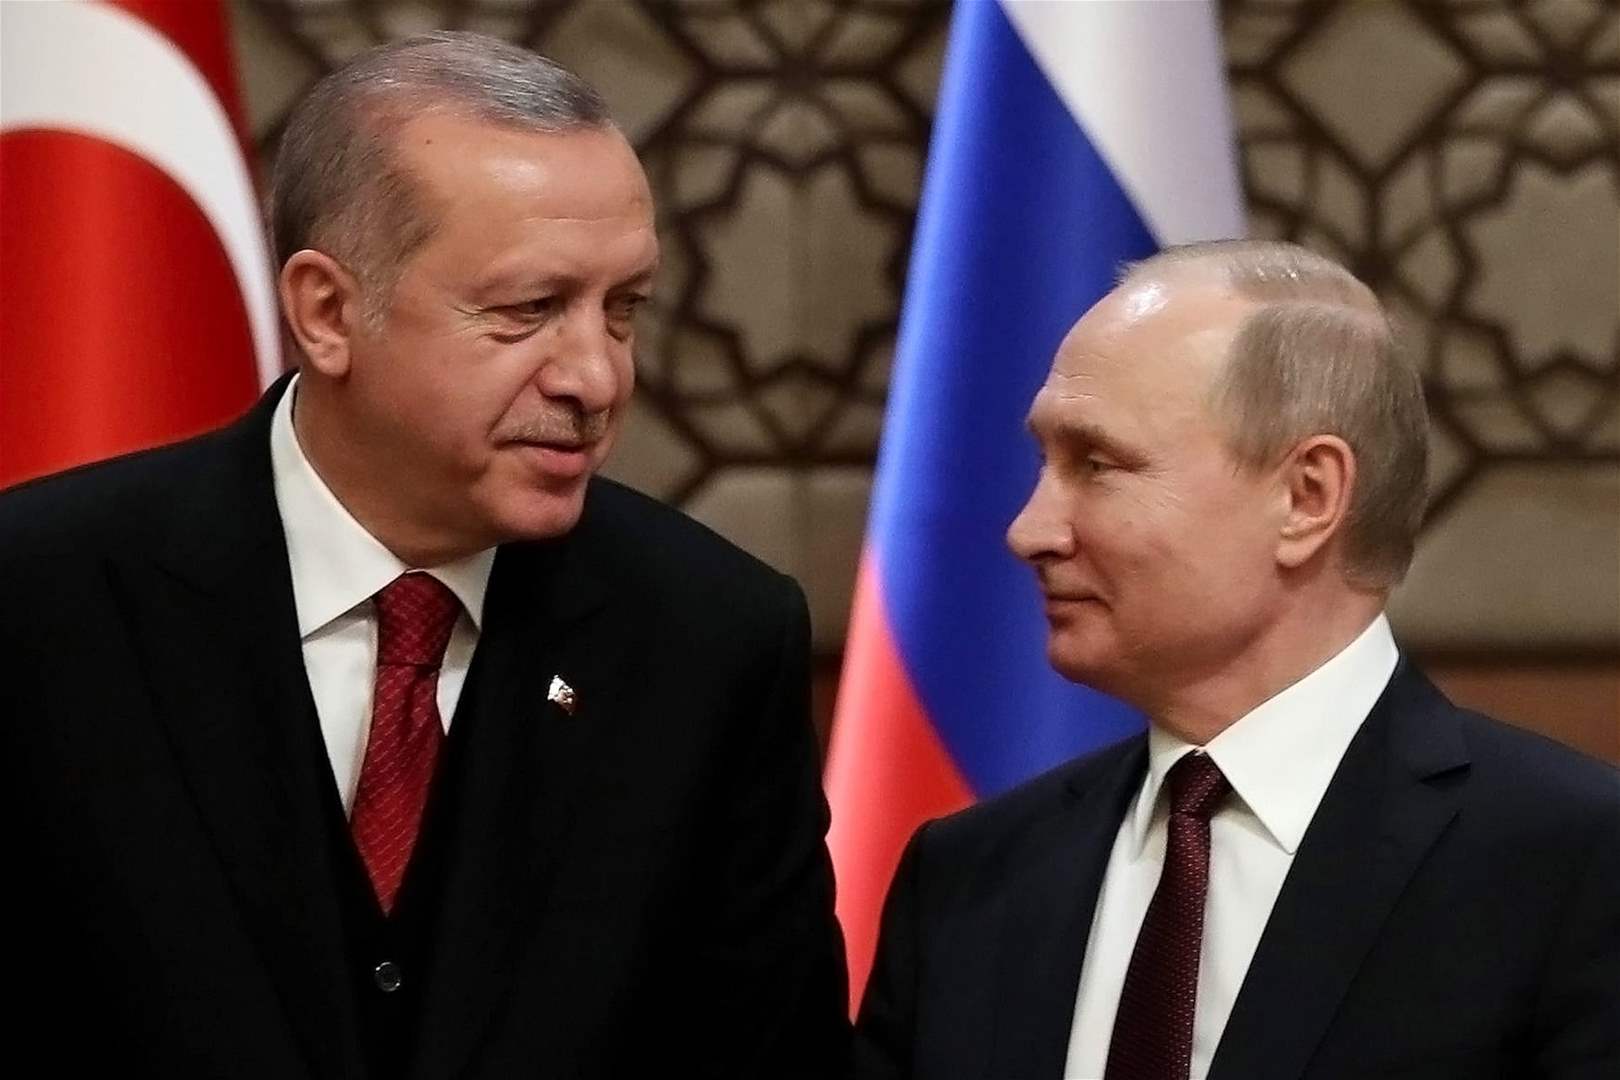 بوتين يهنئ أردوغان بعيده الـ70... ماذا دار بين الرجليّن بالإتصال؟ 